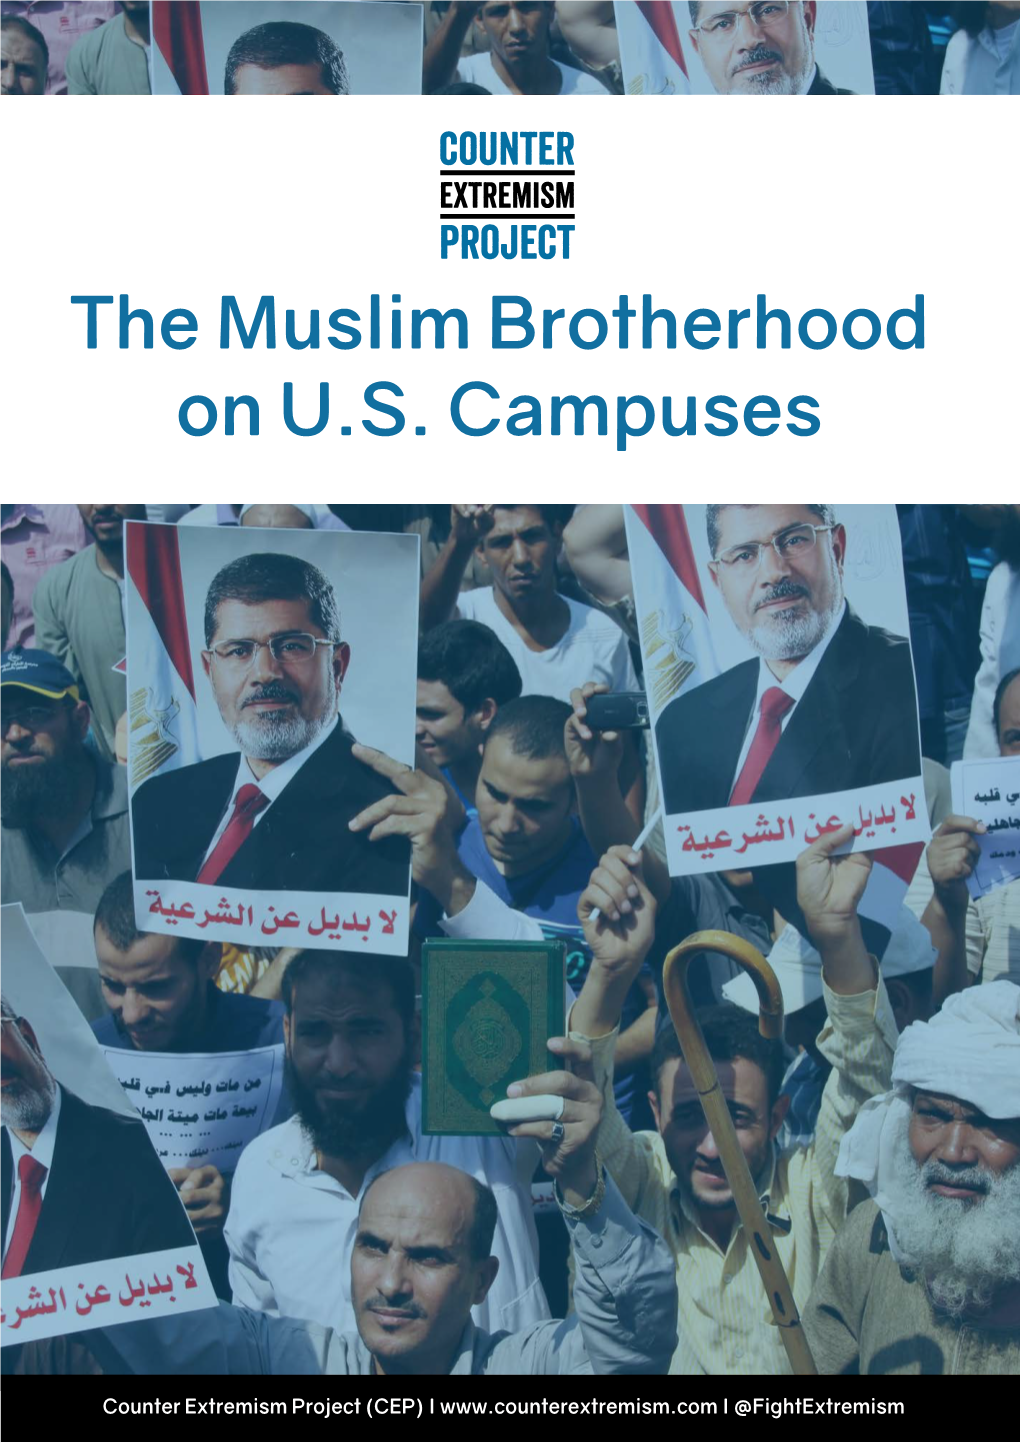 The Muslim Brotherhood on U.S. Campuses